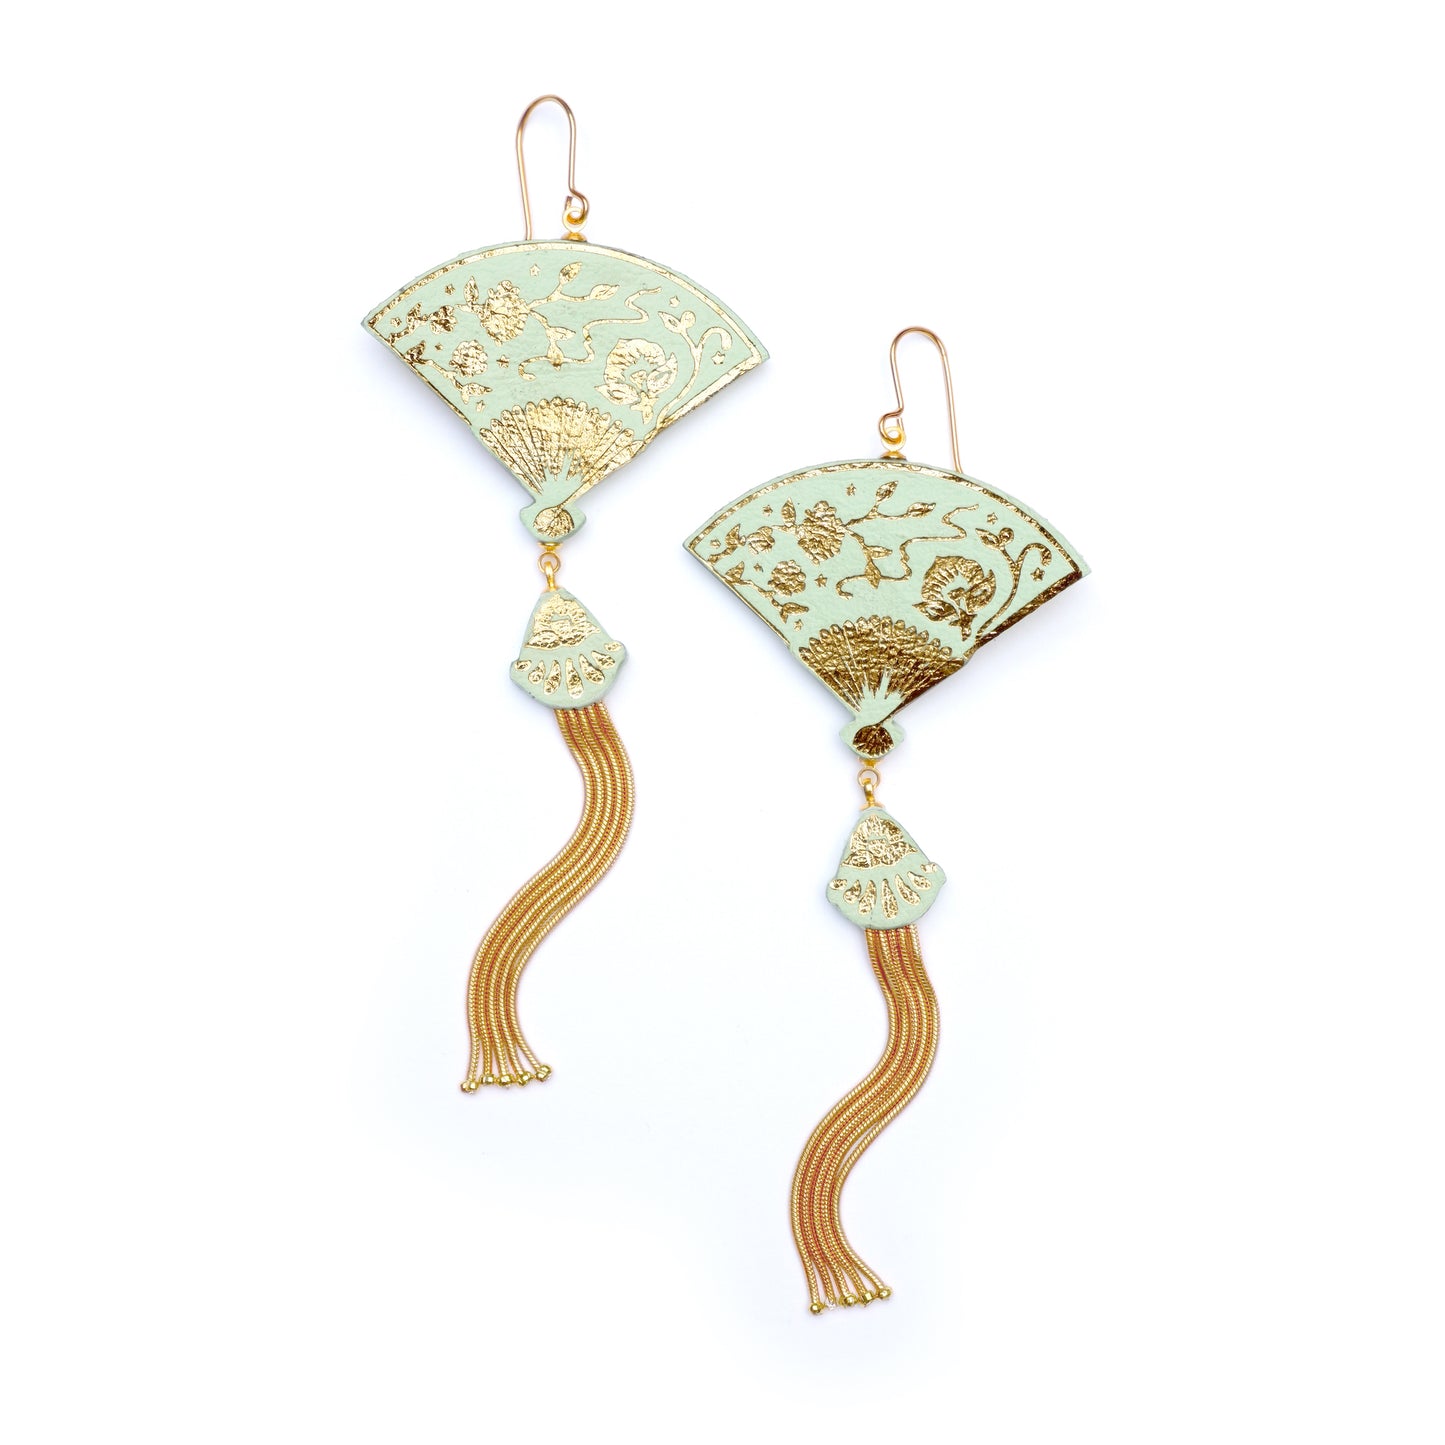 tasselled fan earrings in pastel pistachio & gold